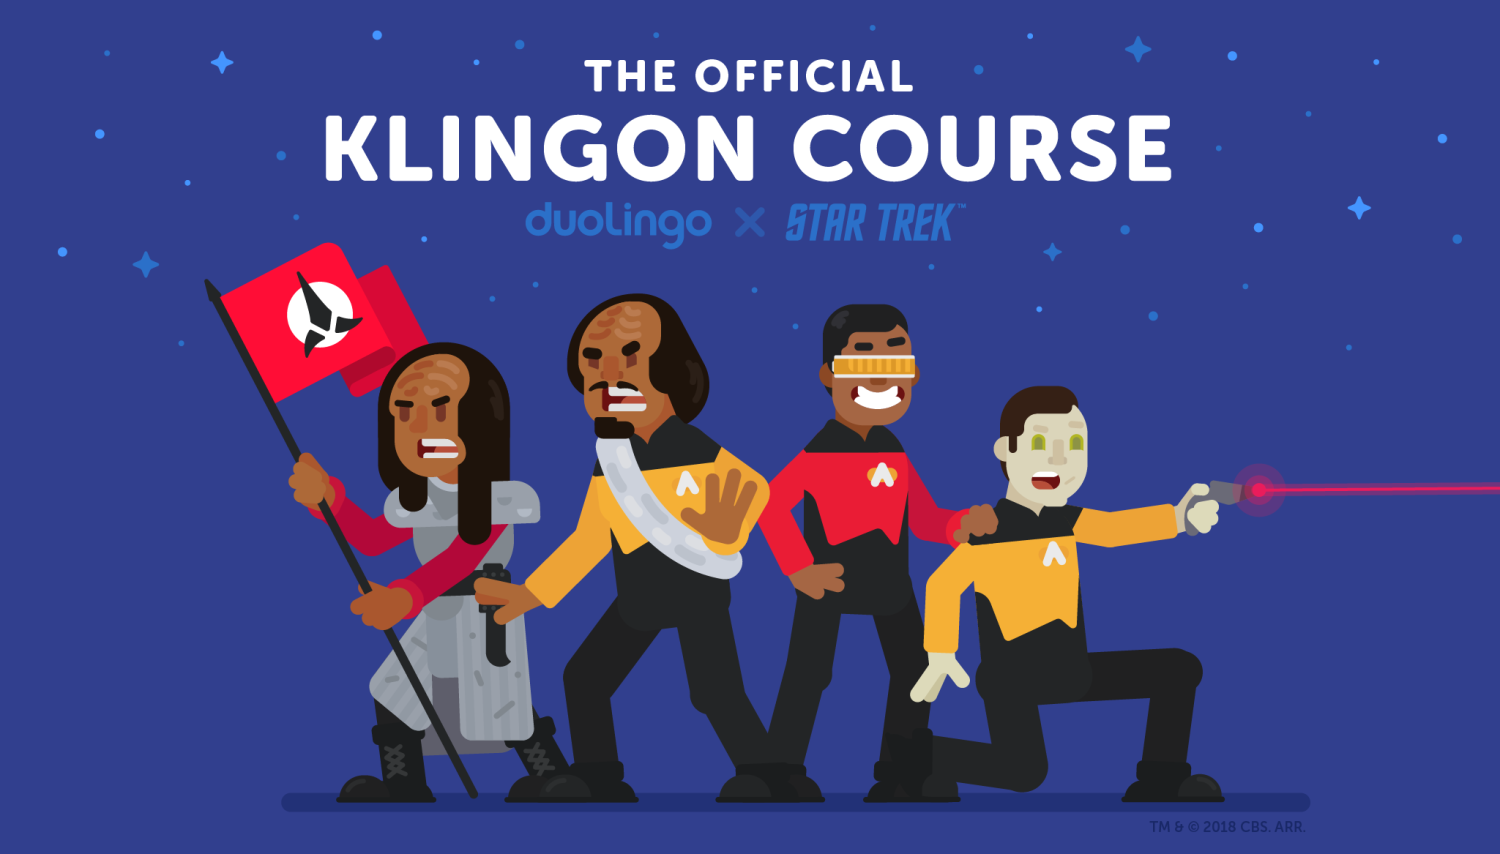 Želite naučiti klingonski? Sada to možete potpuno besplatno